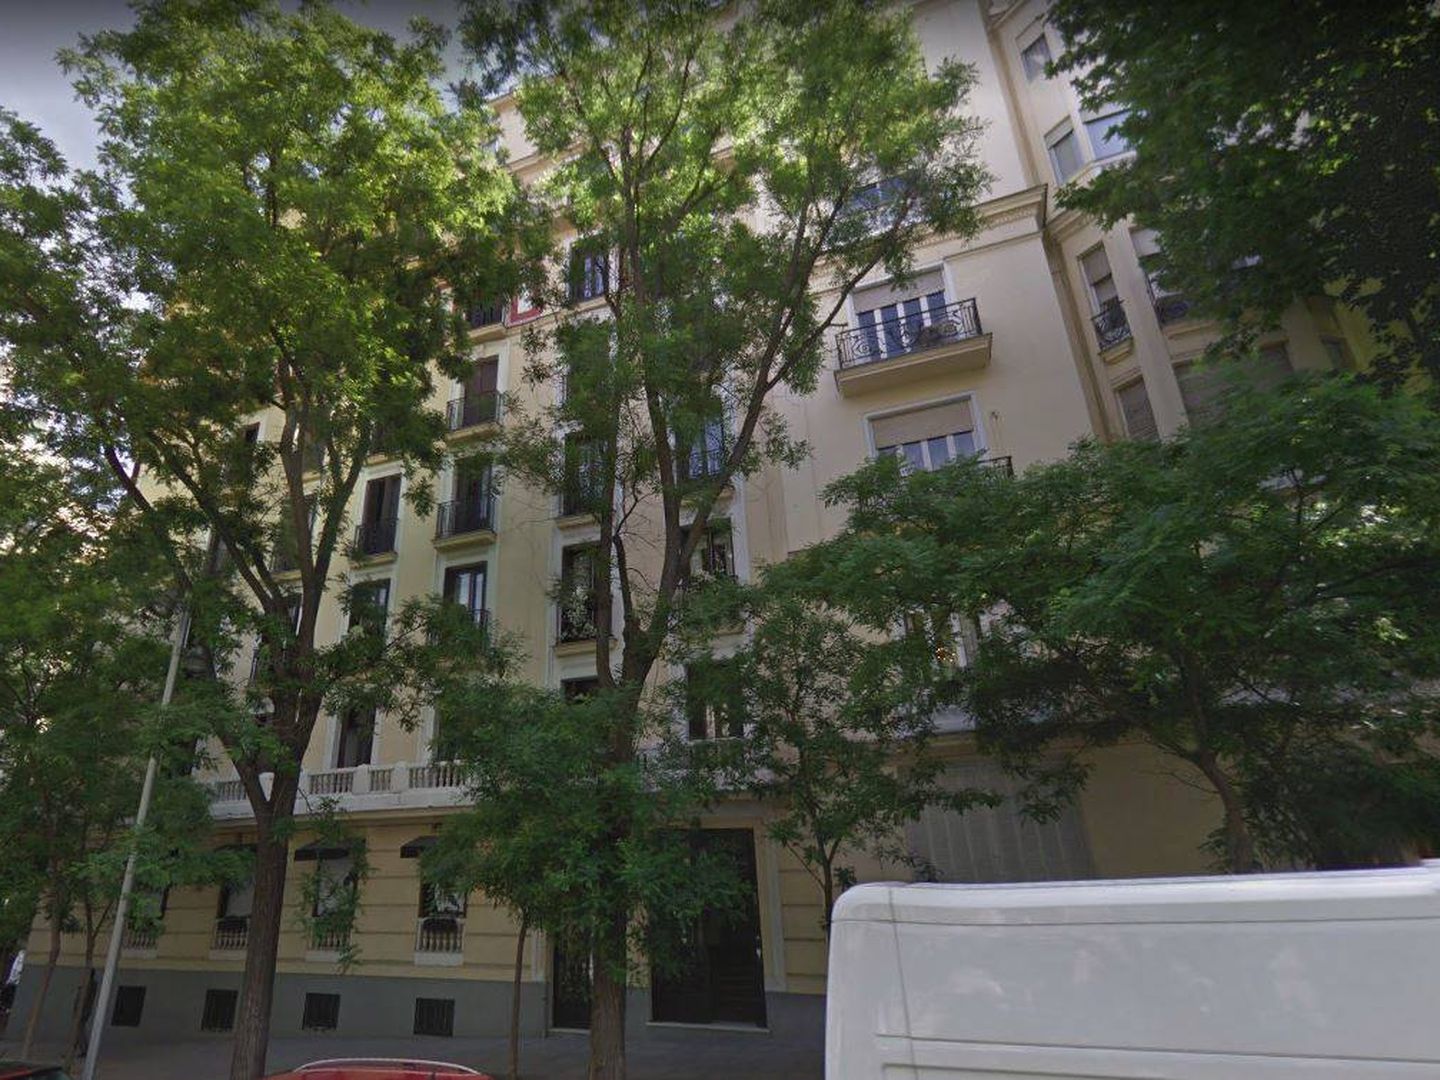 Fachada de la calle Hermanos Bécquer, donde viven los Franco.